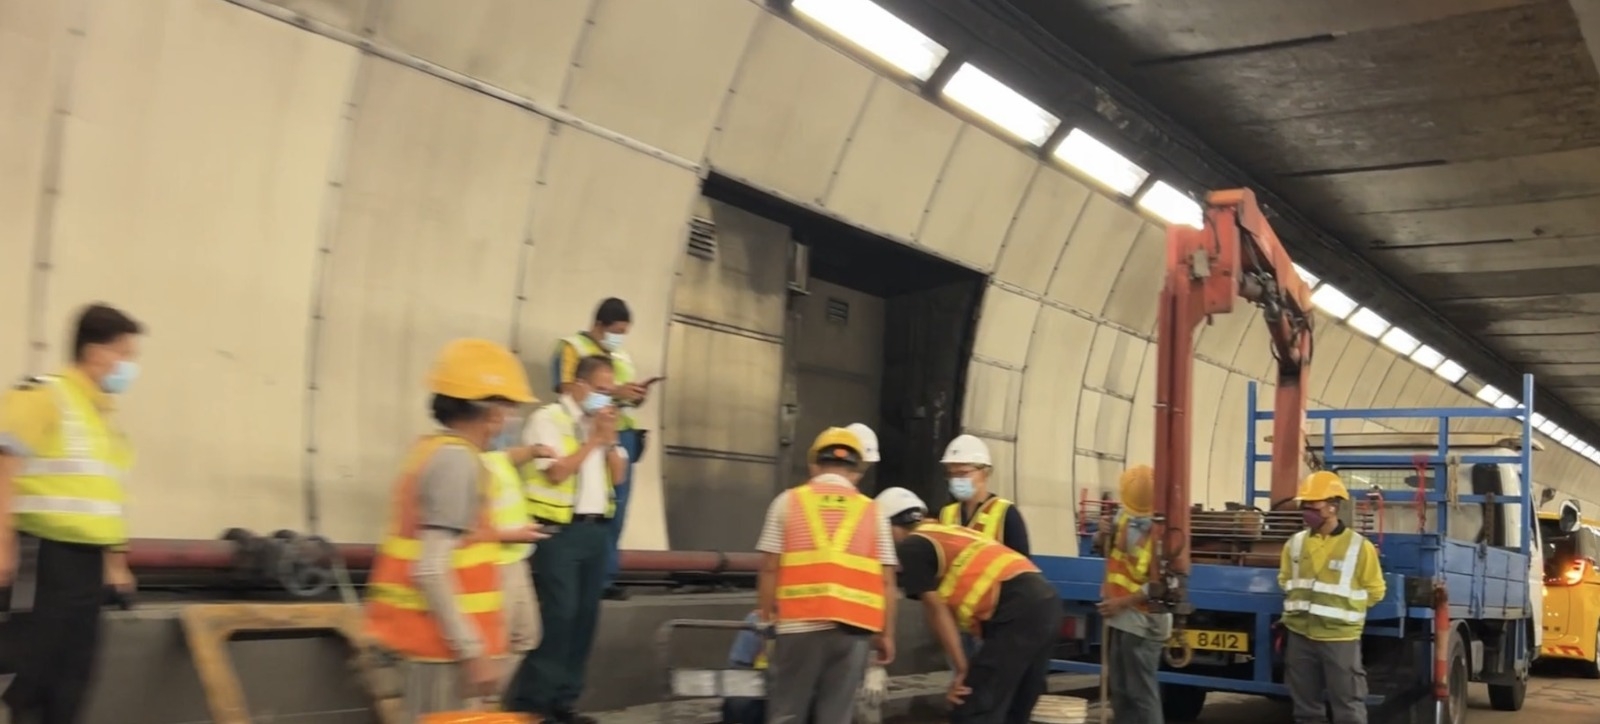 工程人員方抵達隧道進行維修